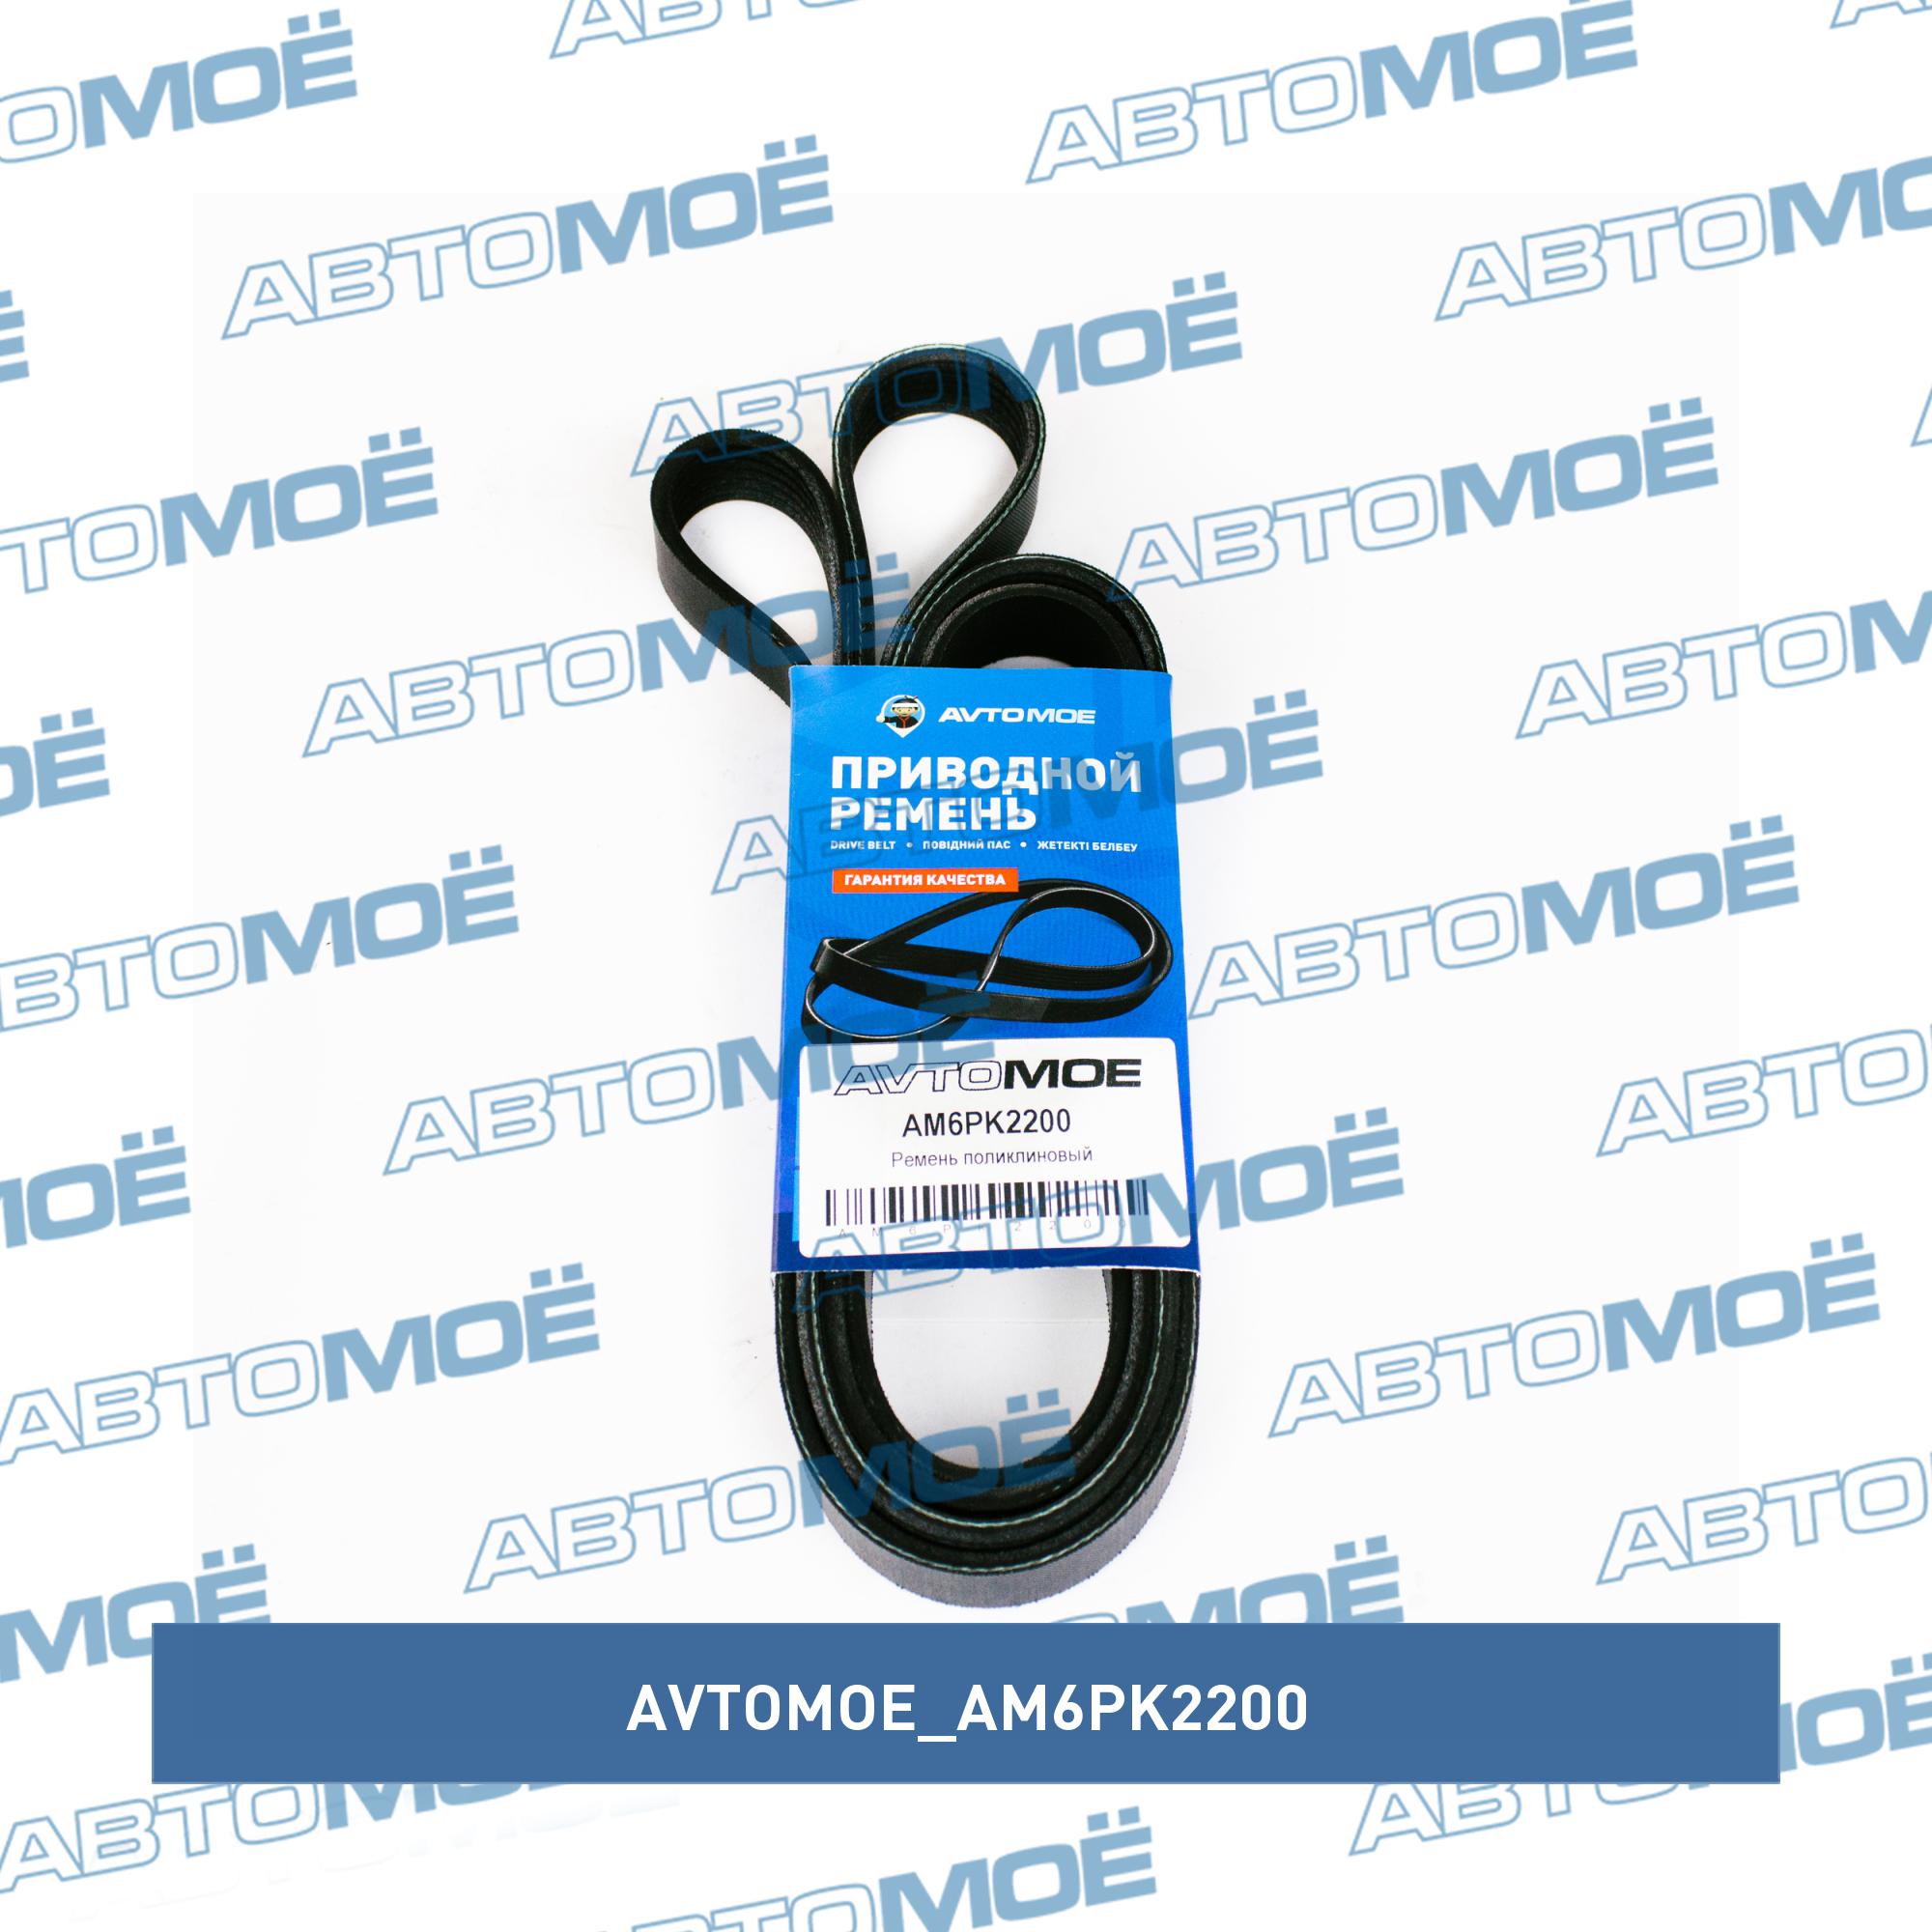 Ремень поликлиновый AVTOMOE AM6PK2200